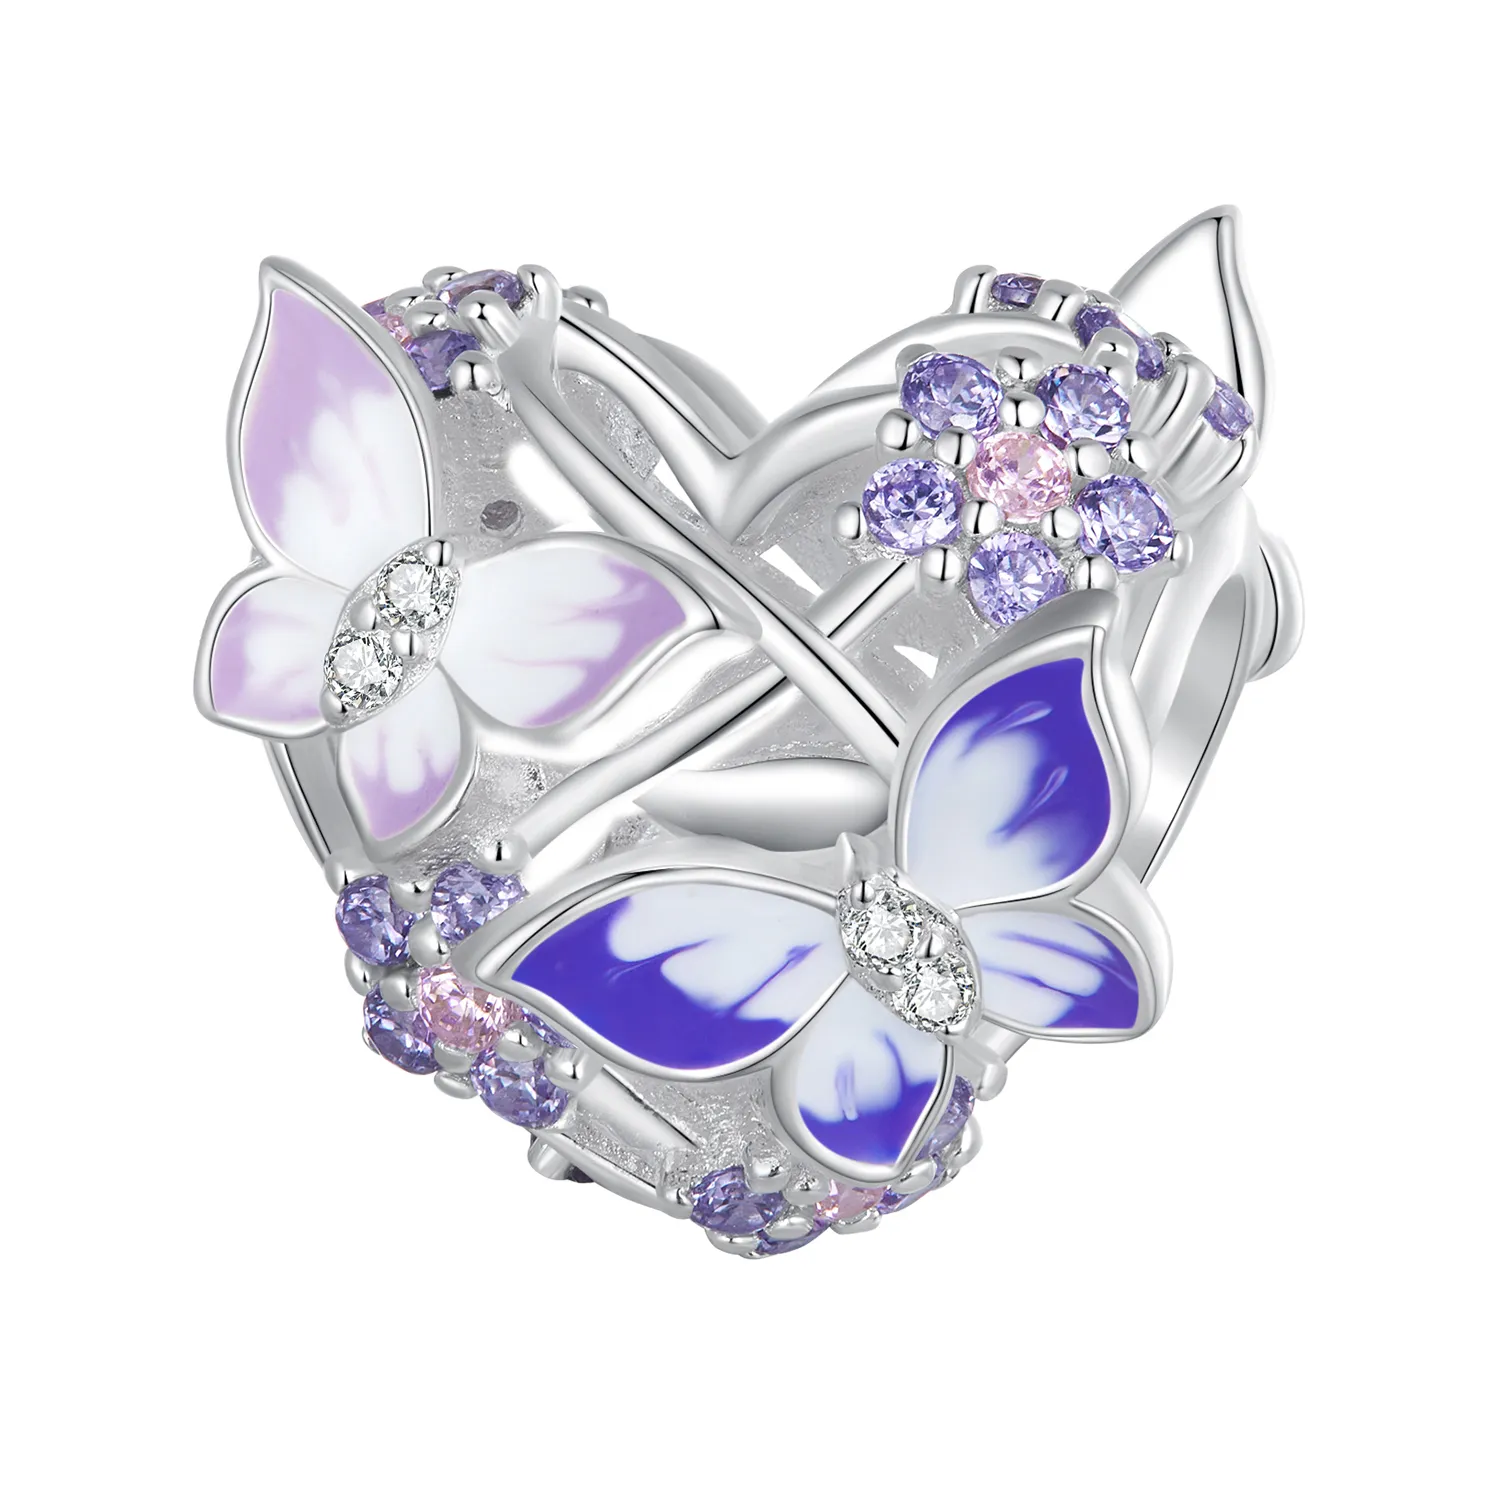 Pandora Stil Inimă în formă de fluture Charm - SCC2464